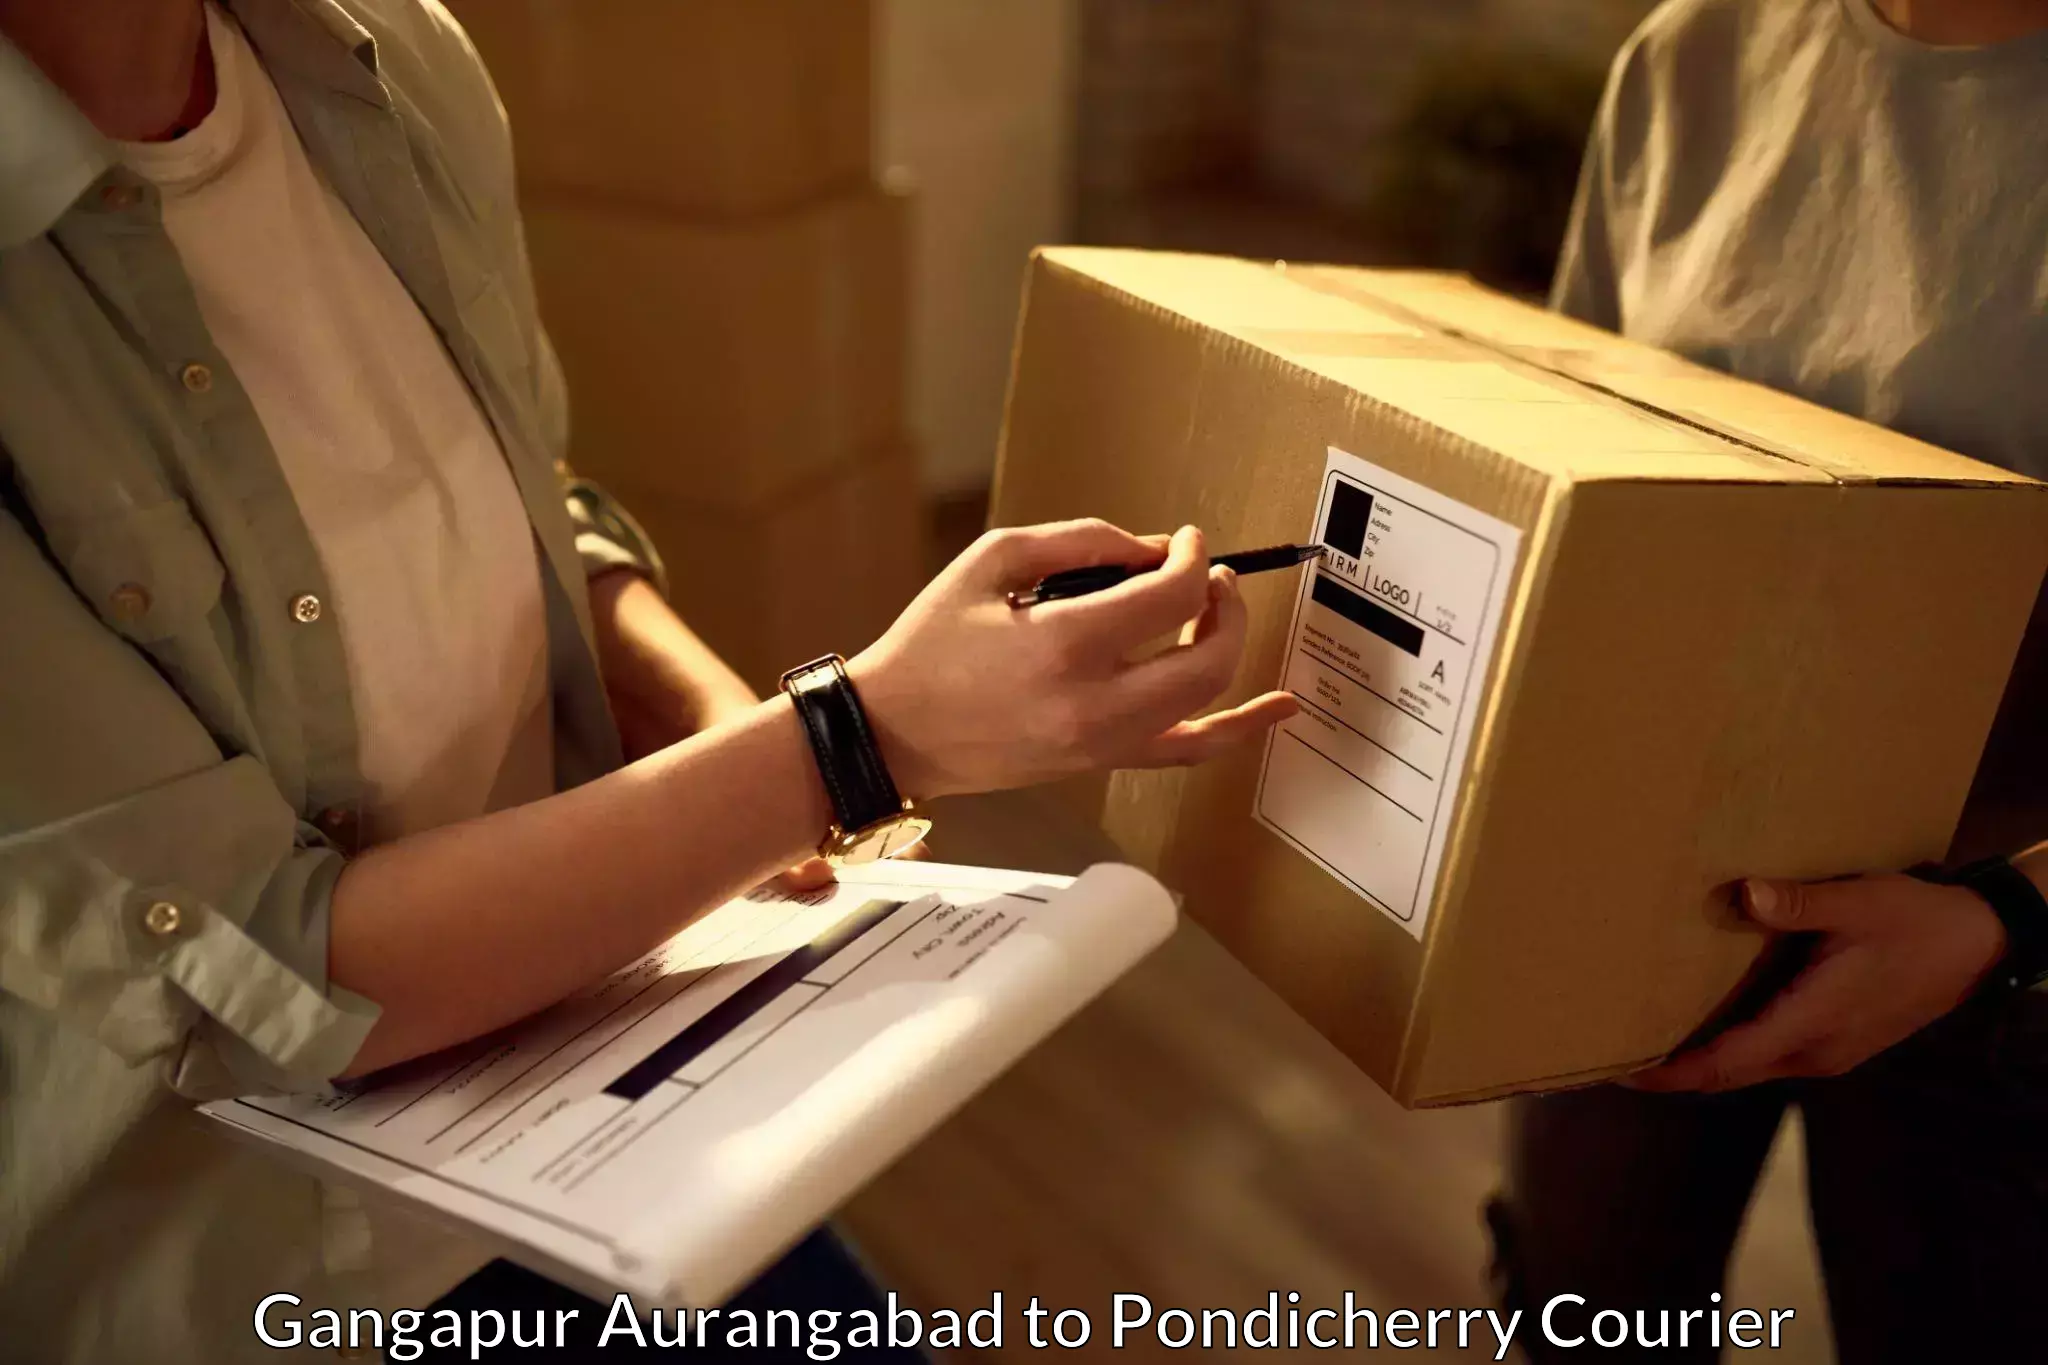 Flexible delivery schedules Gangapur Aurangabad to Pondicherry